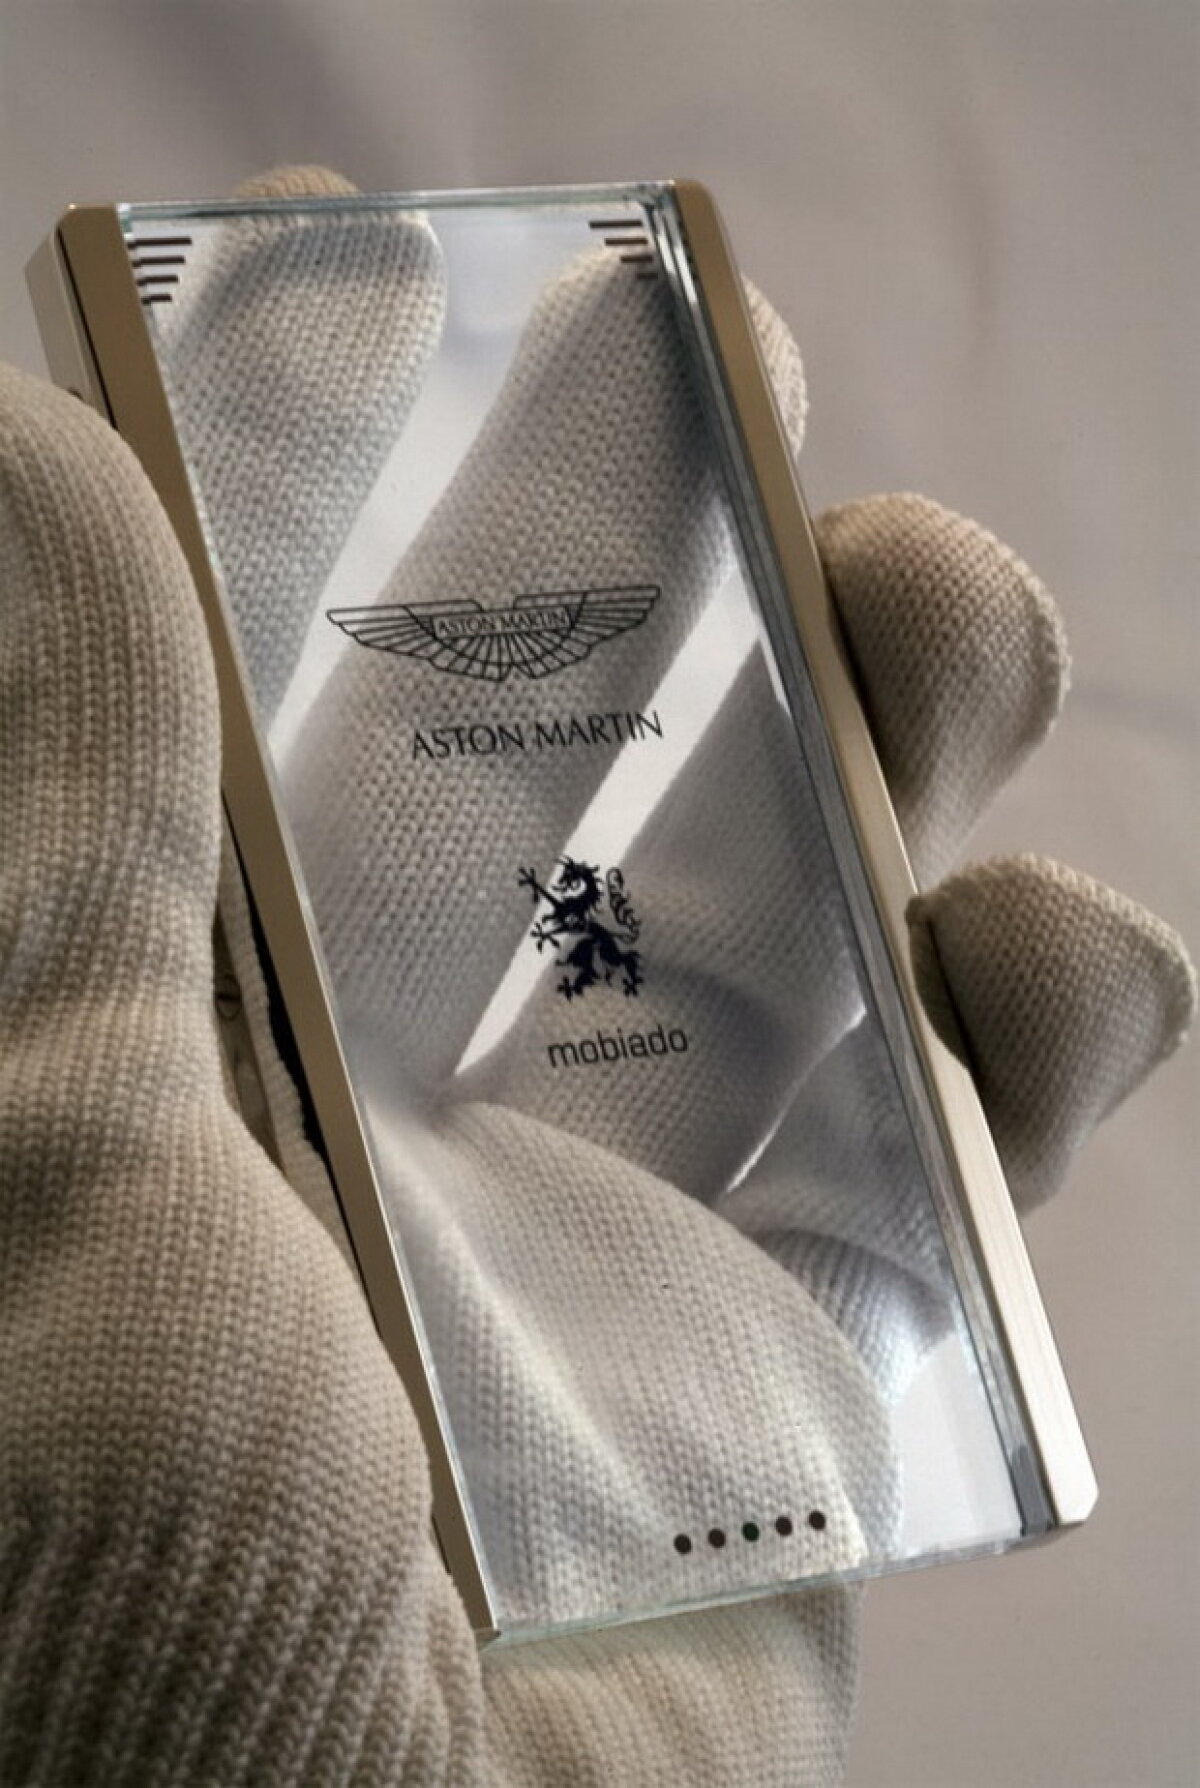 Aston Martin lansează CPT002, smartphone cu design futuristic şi funcţii de control pentru maşina ta sport